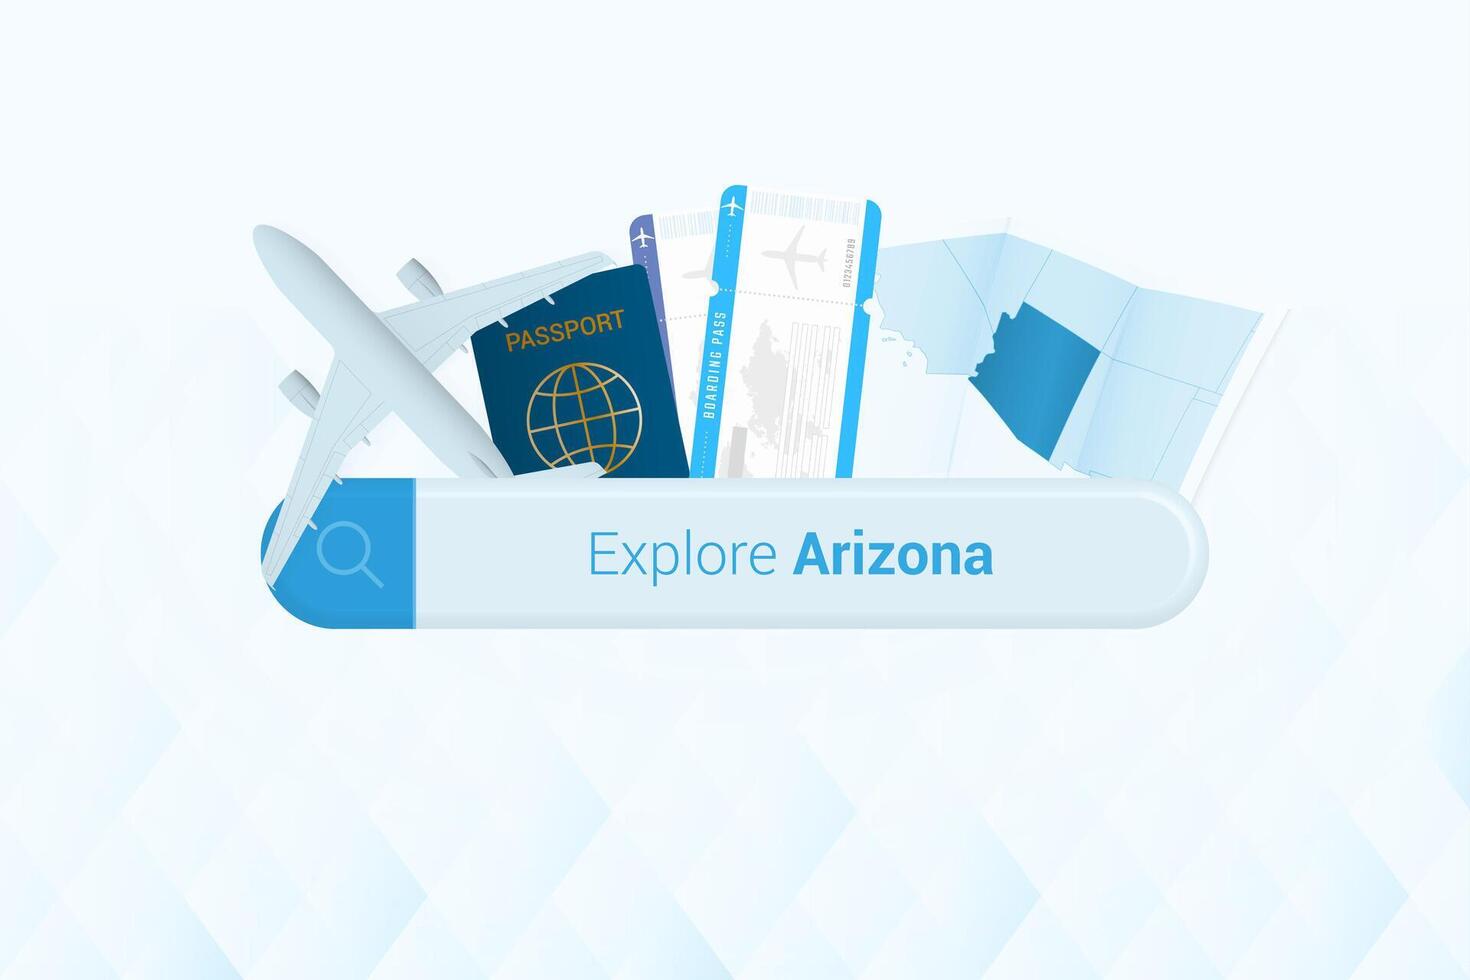 buscando Entradas a Arizona o viaje destino en Arizona. buscando bar con avión, pasaporte, embarque aprobar, Entradas y mapa. vector